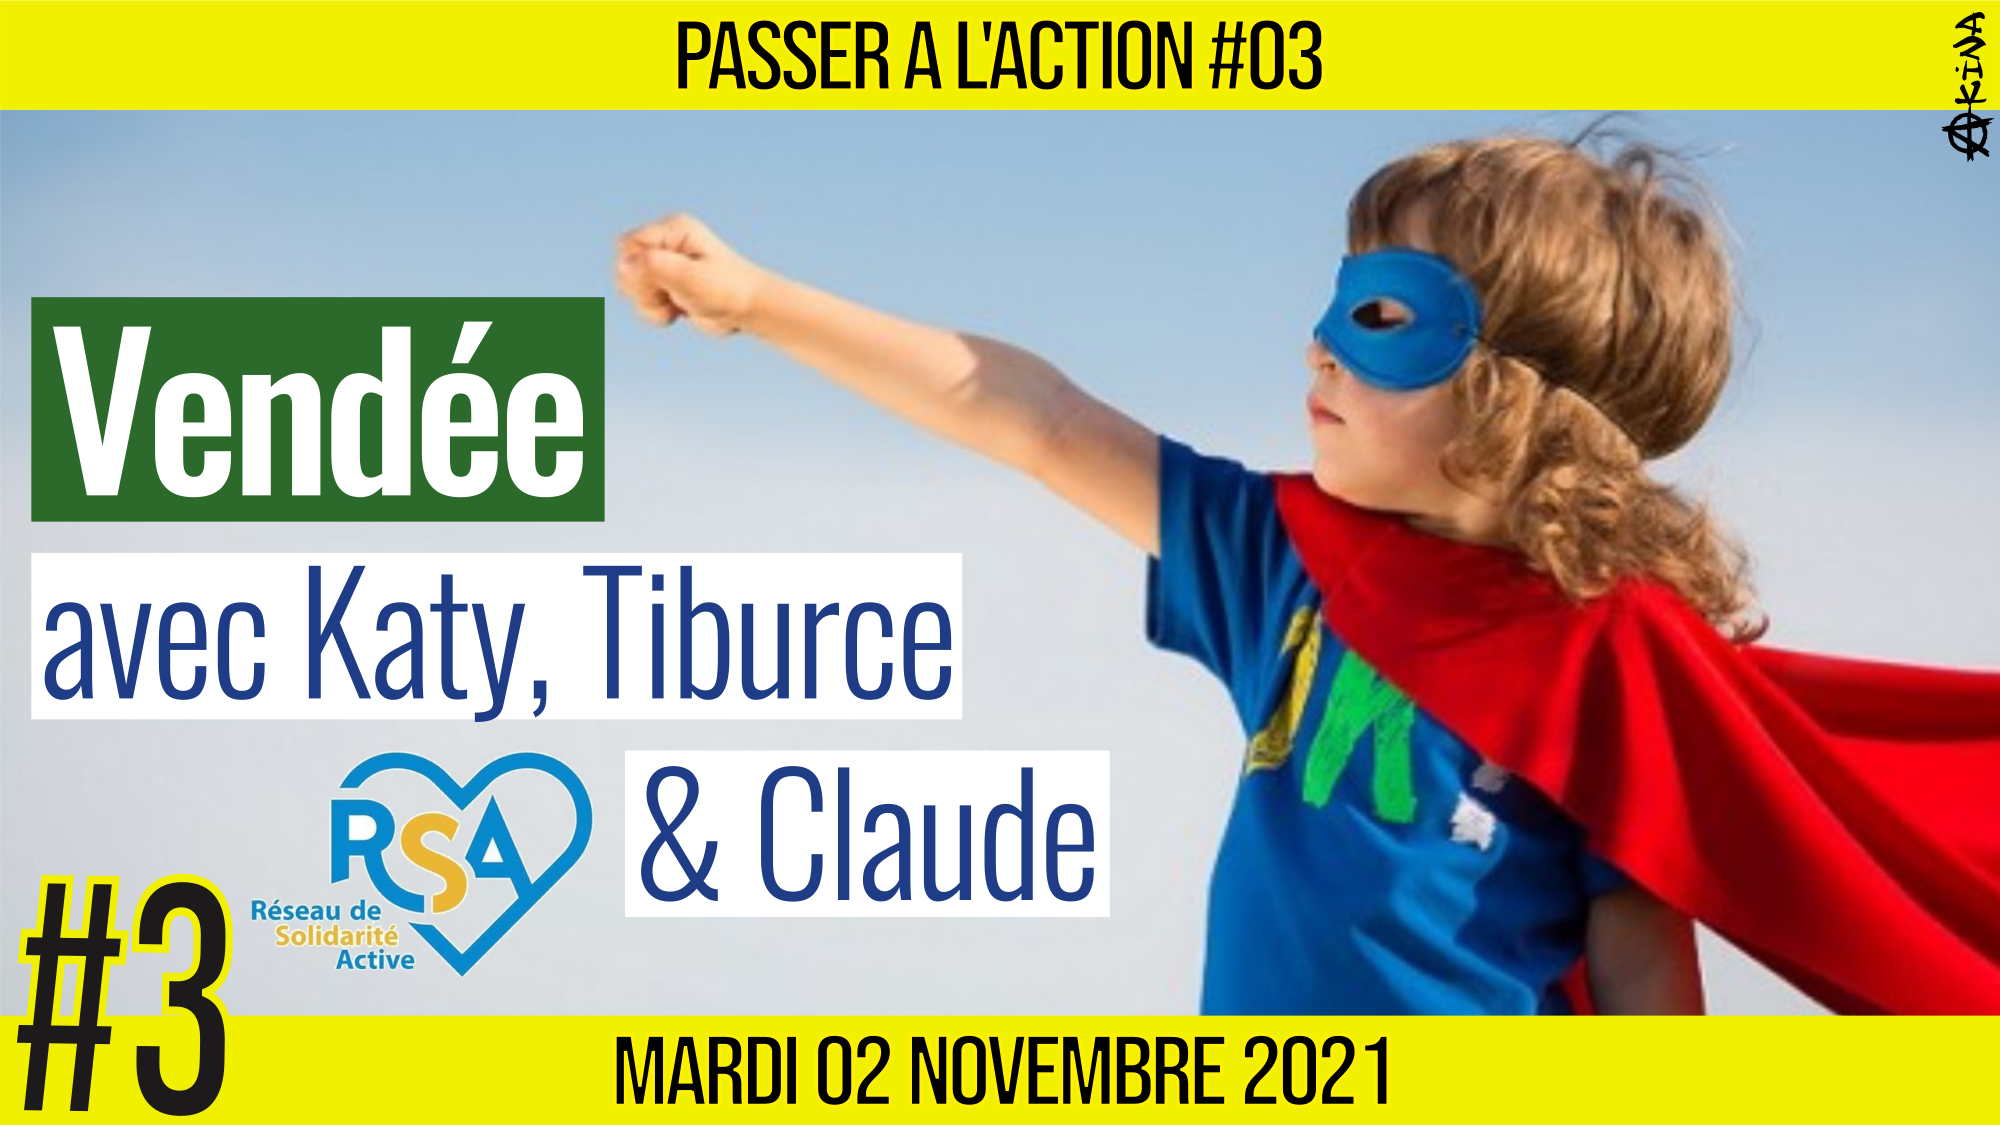 🎬 PASSER A L’ACTION #03 👥 Ils agissent en Vendée 👥 Katy & Claude 🟨 Avec RSA 📆 02-11-2021